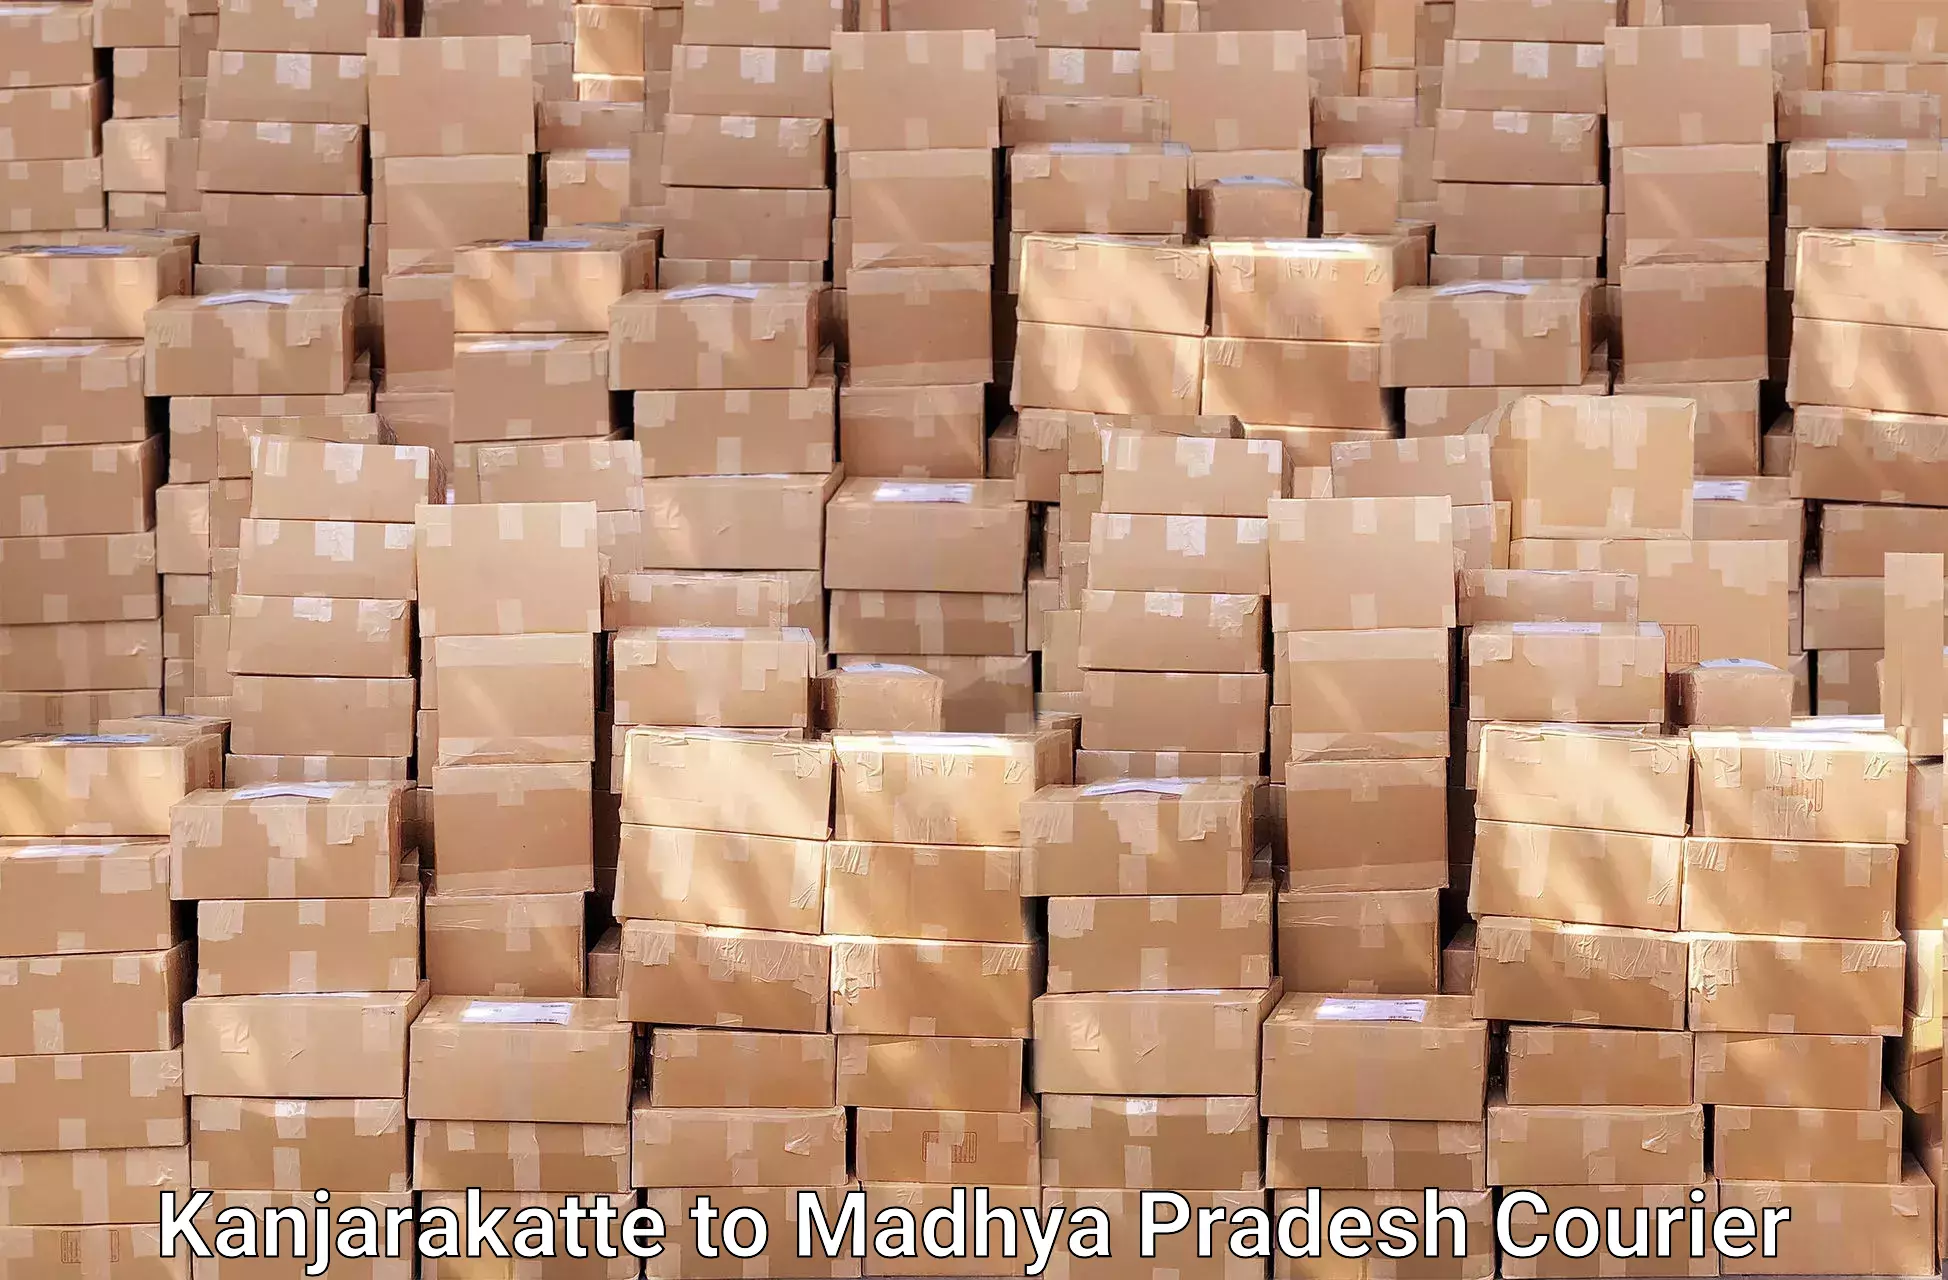 Seamless moving process in Kanjarakatte to Madhya Pradesh